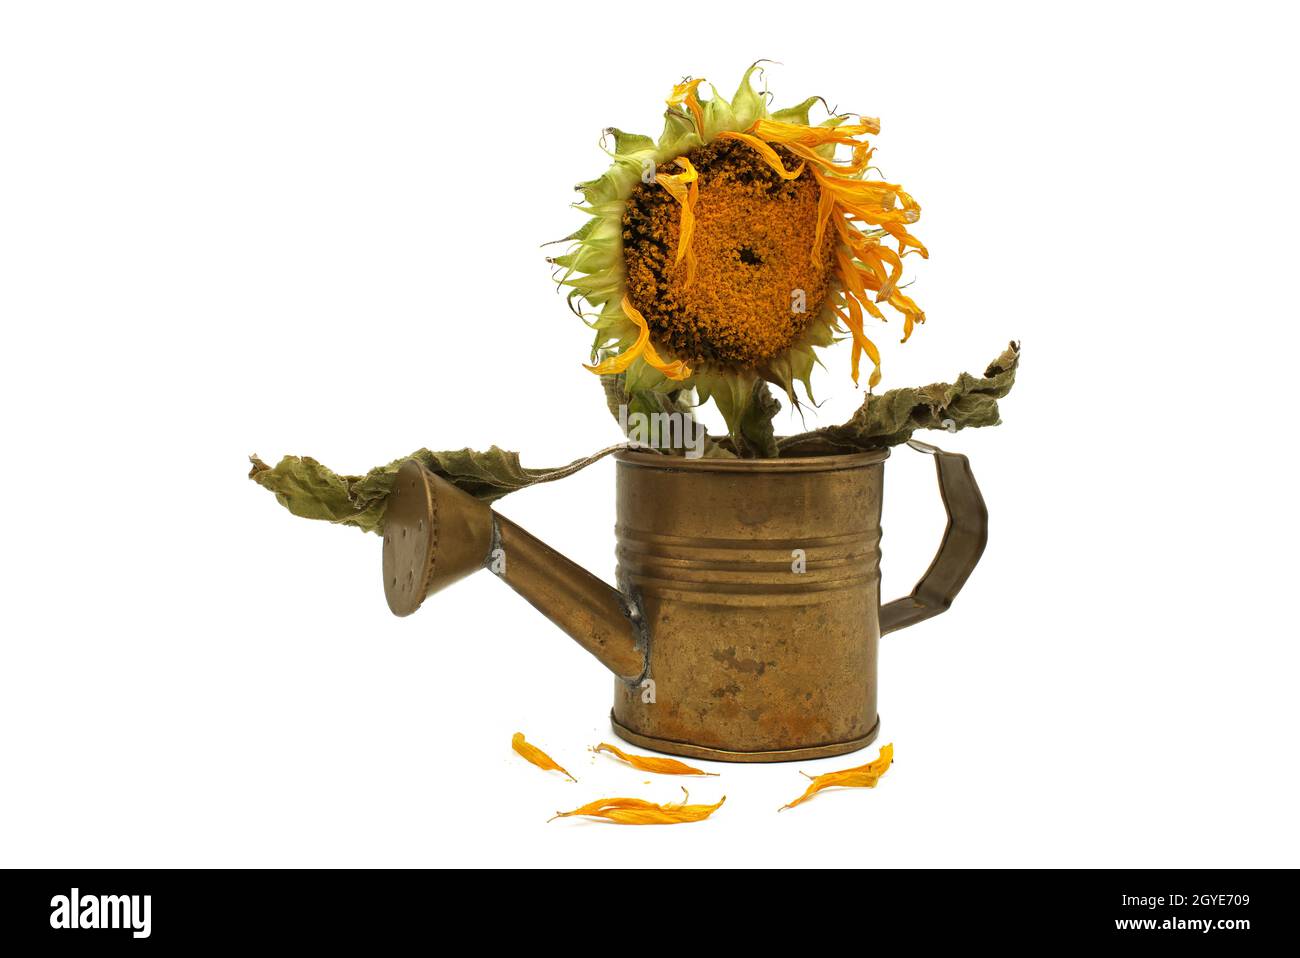 Rustikales Stillleben mit welkender Sonnenblume in einer Gießkanne, die die ölreiche Samenbildung zeigt und ein paar gefallene gelbe Blütenblätter im Vordergrund-Isol Stockfoto